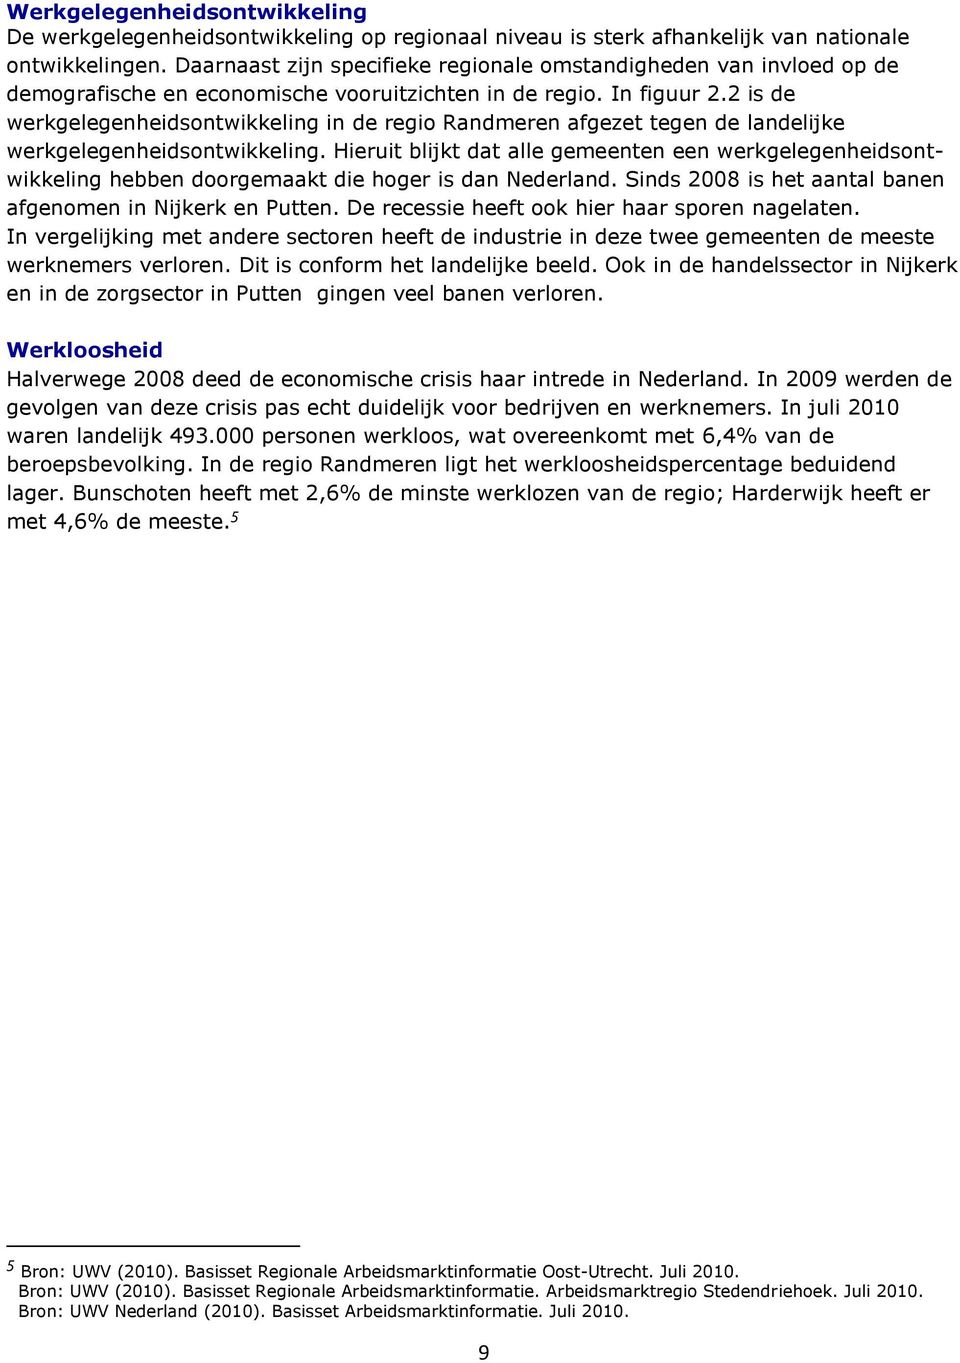 2 is de werkgelegenheidsontwikkeling in de regio Randmeren afgezet tegen de landelijke werkgelegenheidsontwikkeling.